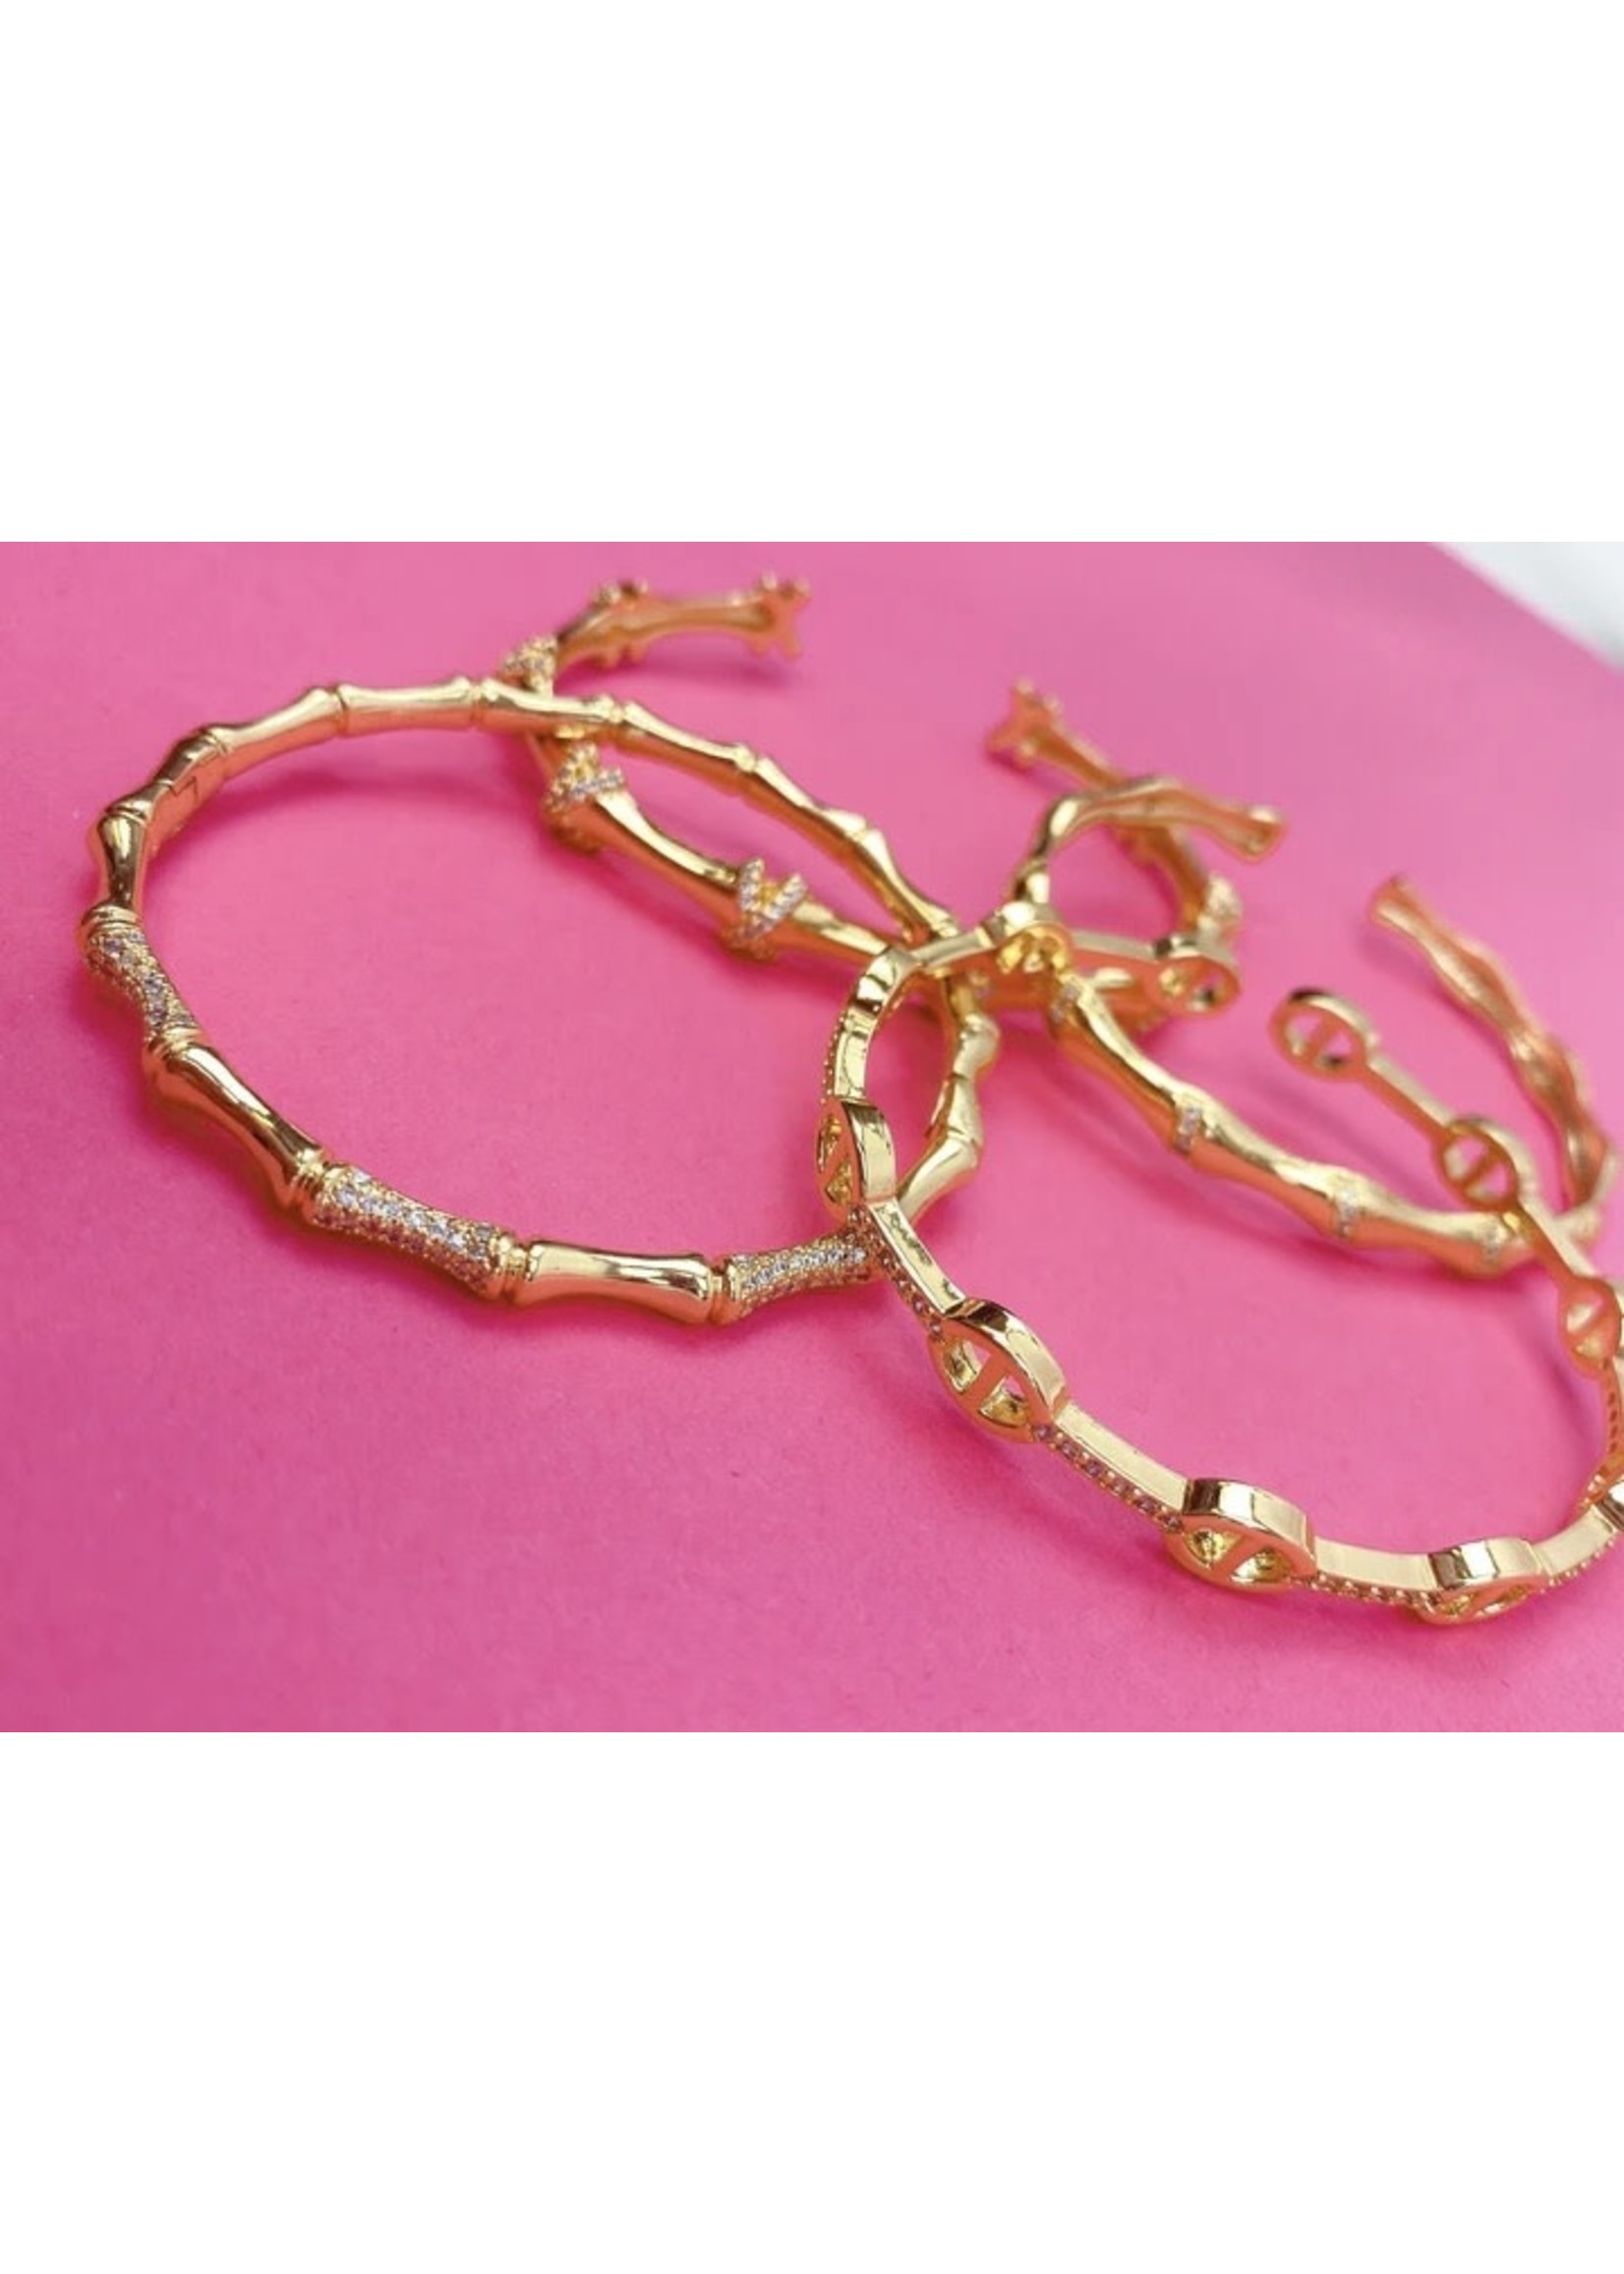 Taylor Shaye Designs Golden Girls Adjustable Bracelets-Blair